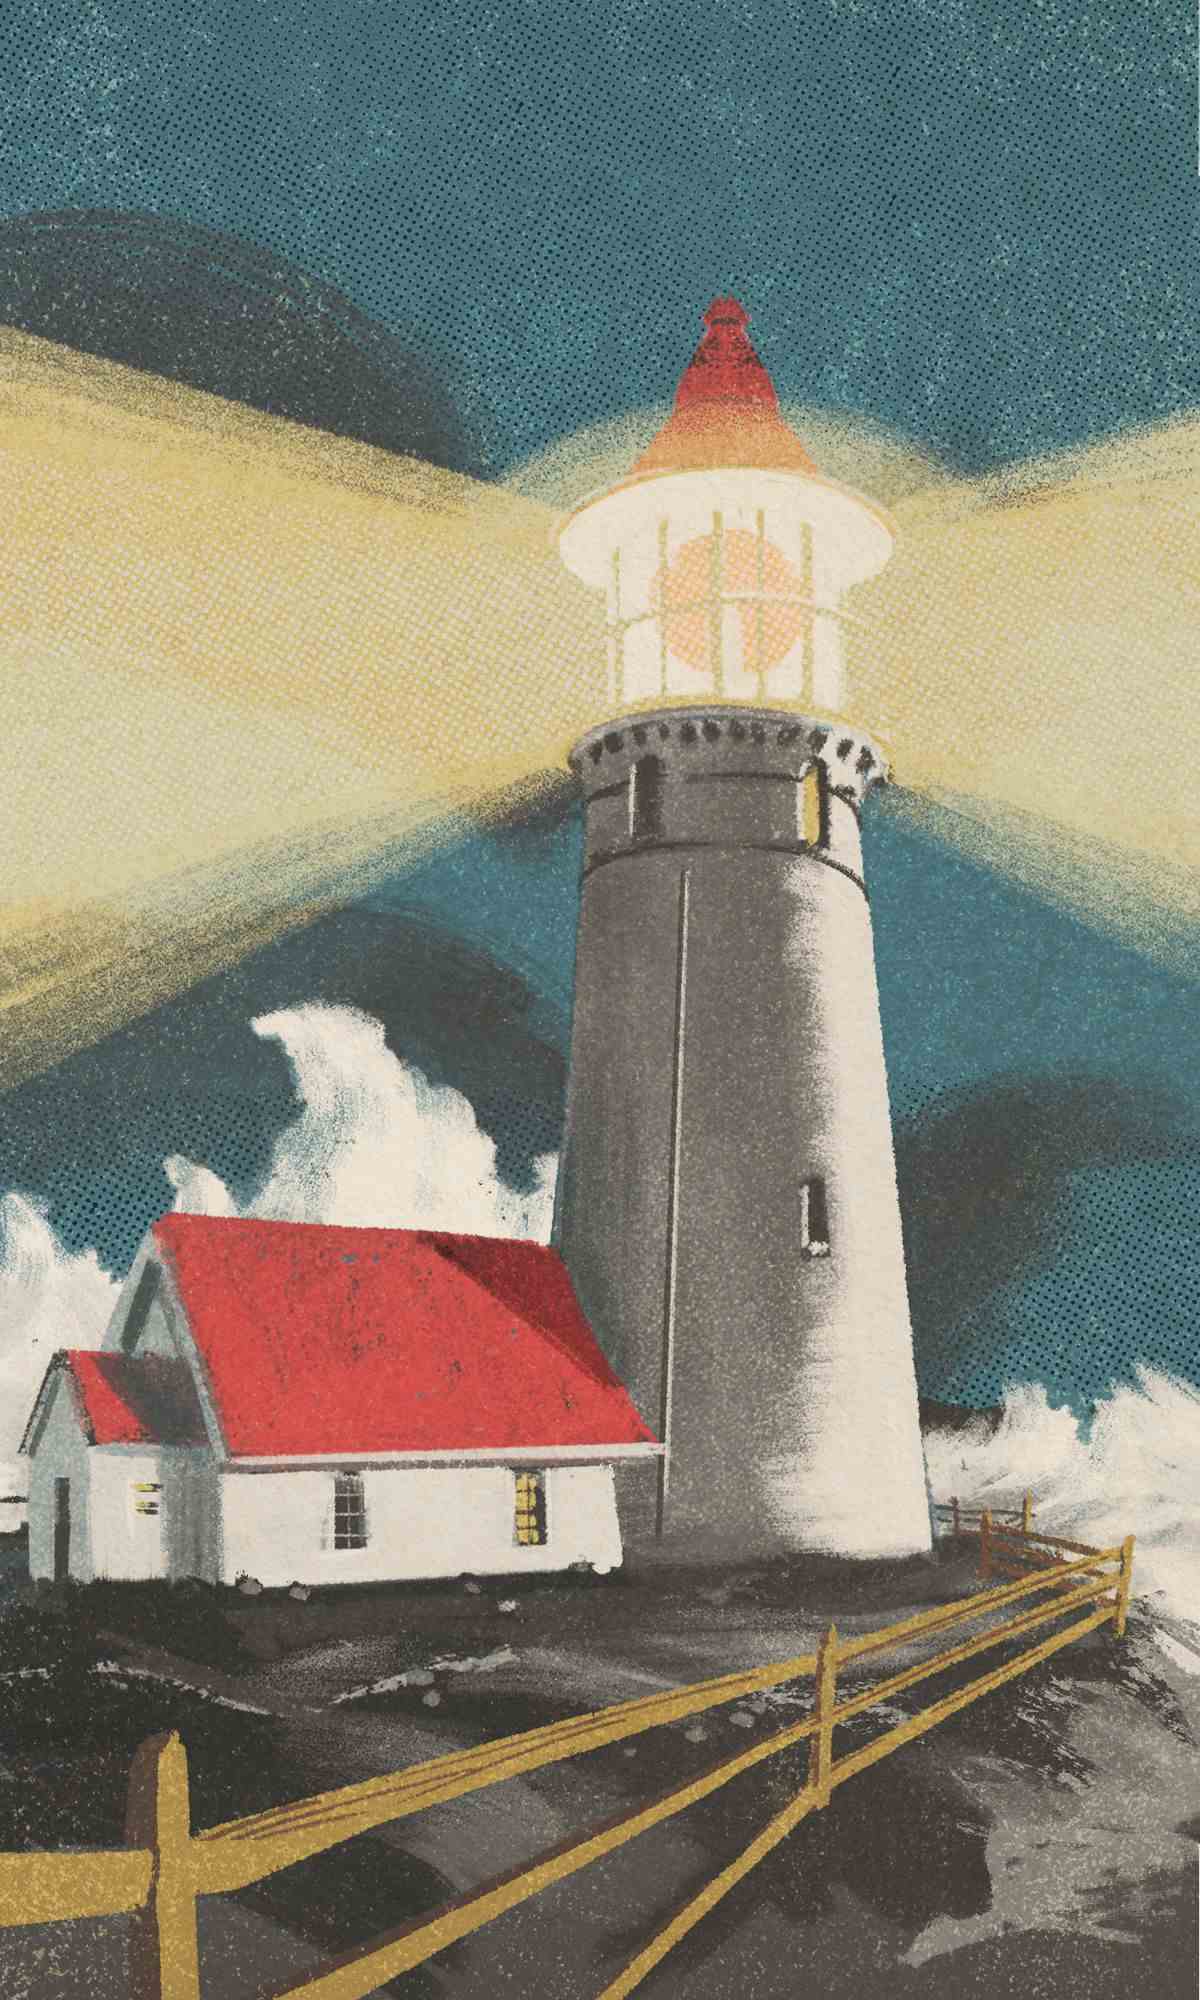 Une image d'un phare sur une falaise, les vagues se précipitant. La lumière elle-même est surdimensionnée et exagérée, avec un faisceau qui jaillit de gauche à droite.  Le toit est rouge et le ciel est bleu gris.